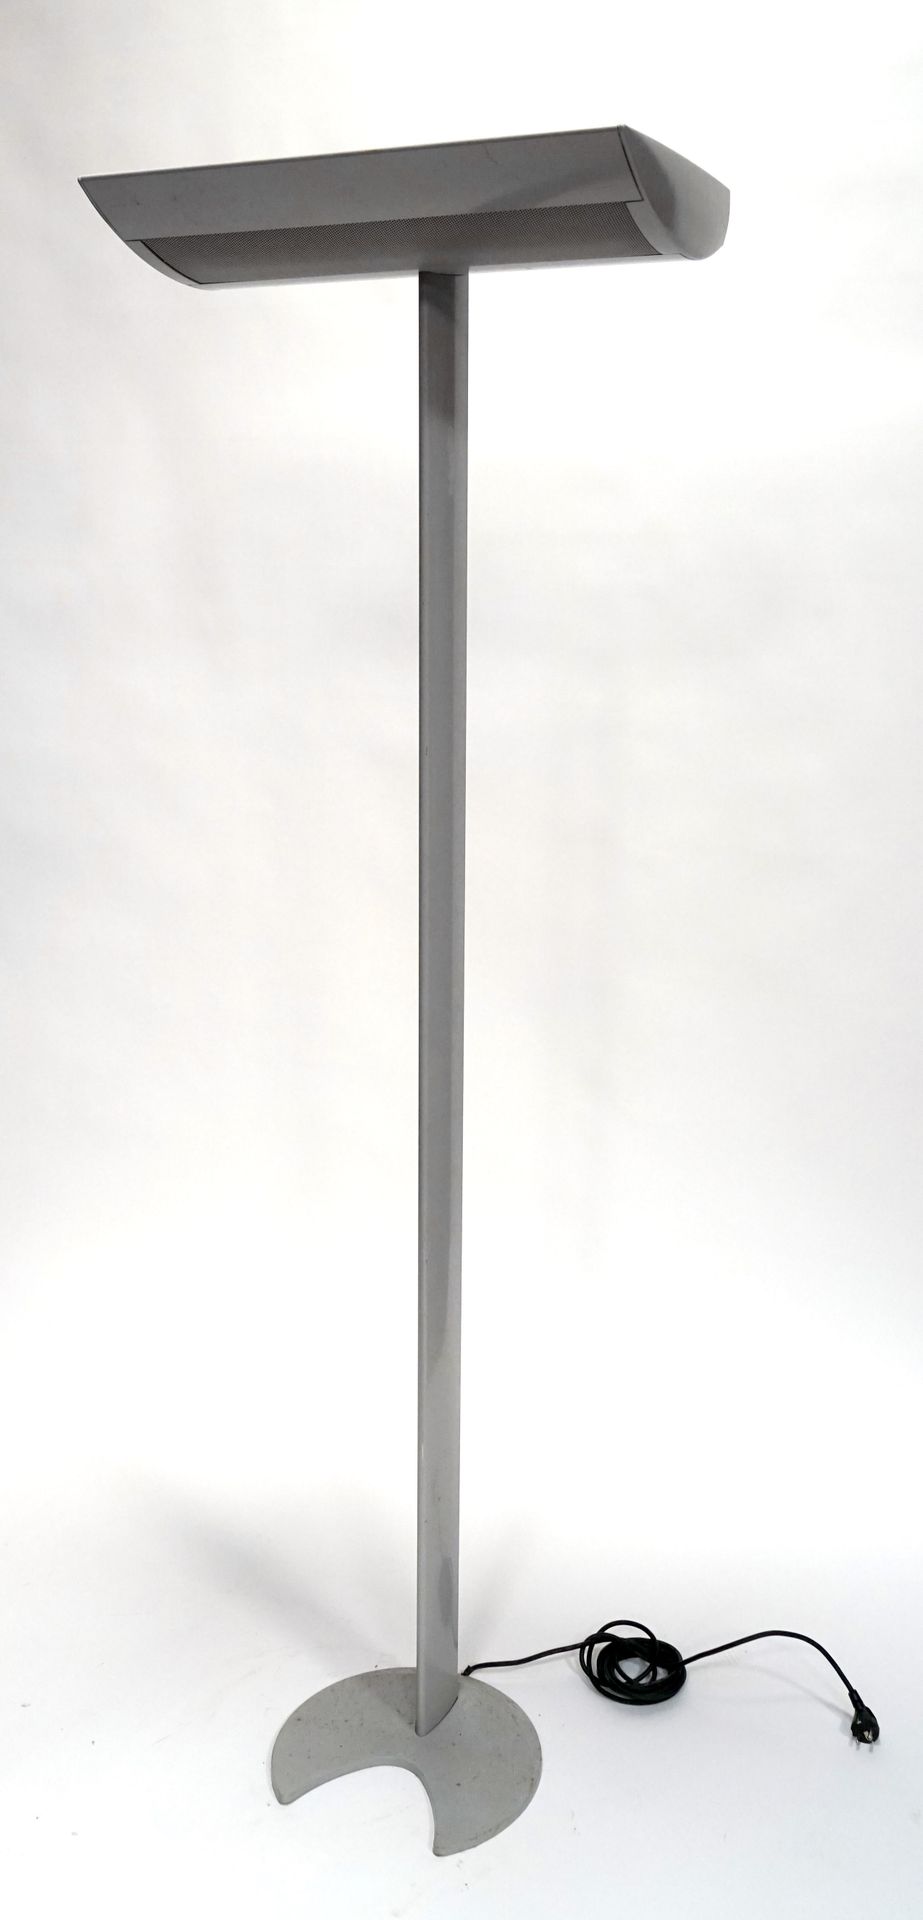 Null LAMPADAIRE en chapa esmaltada gris. Alrededor de 1990. Altura 190 cm.